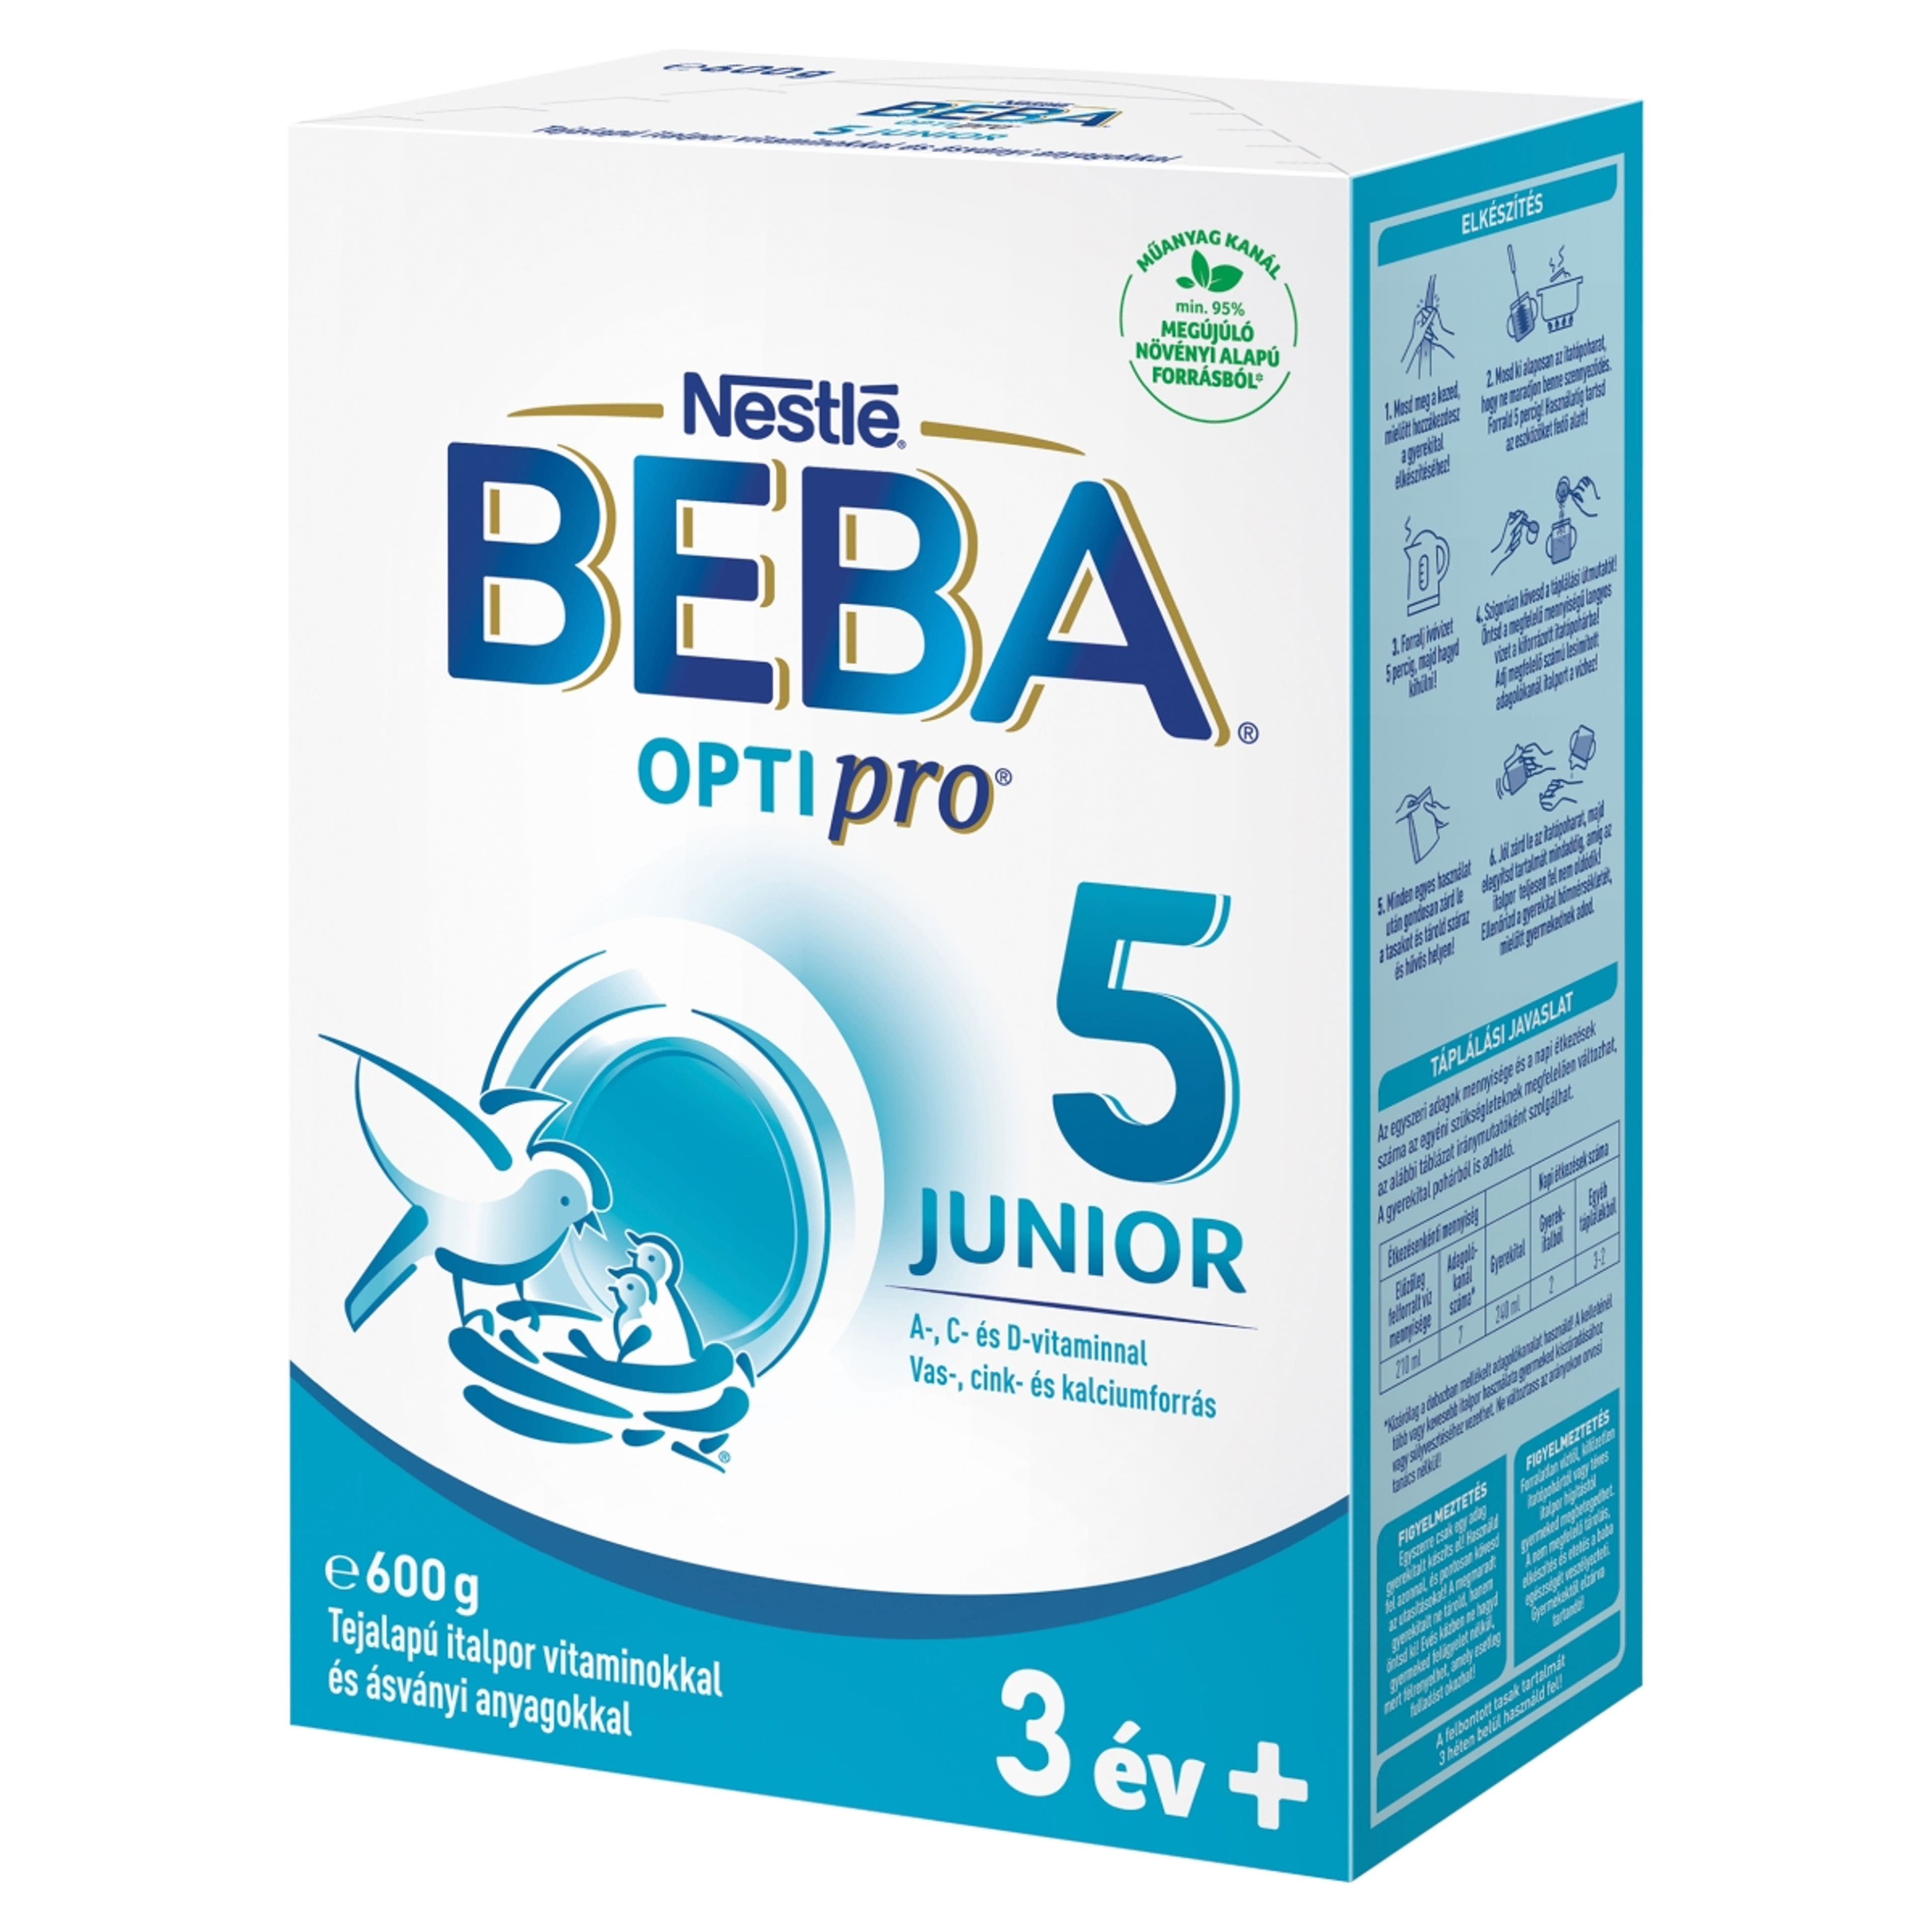 Beba Optipro 5 Junior tejalapú italpor vitaminokkal és ásványi anyagokkal 36 hónapos kortól - 600 g-3